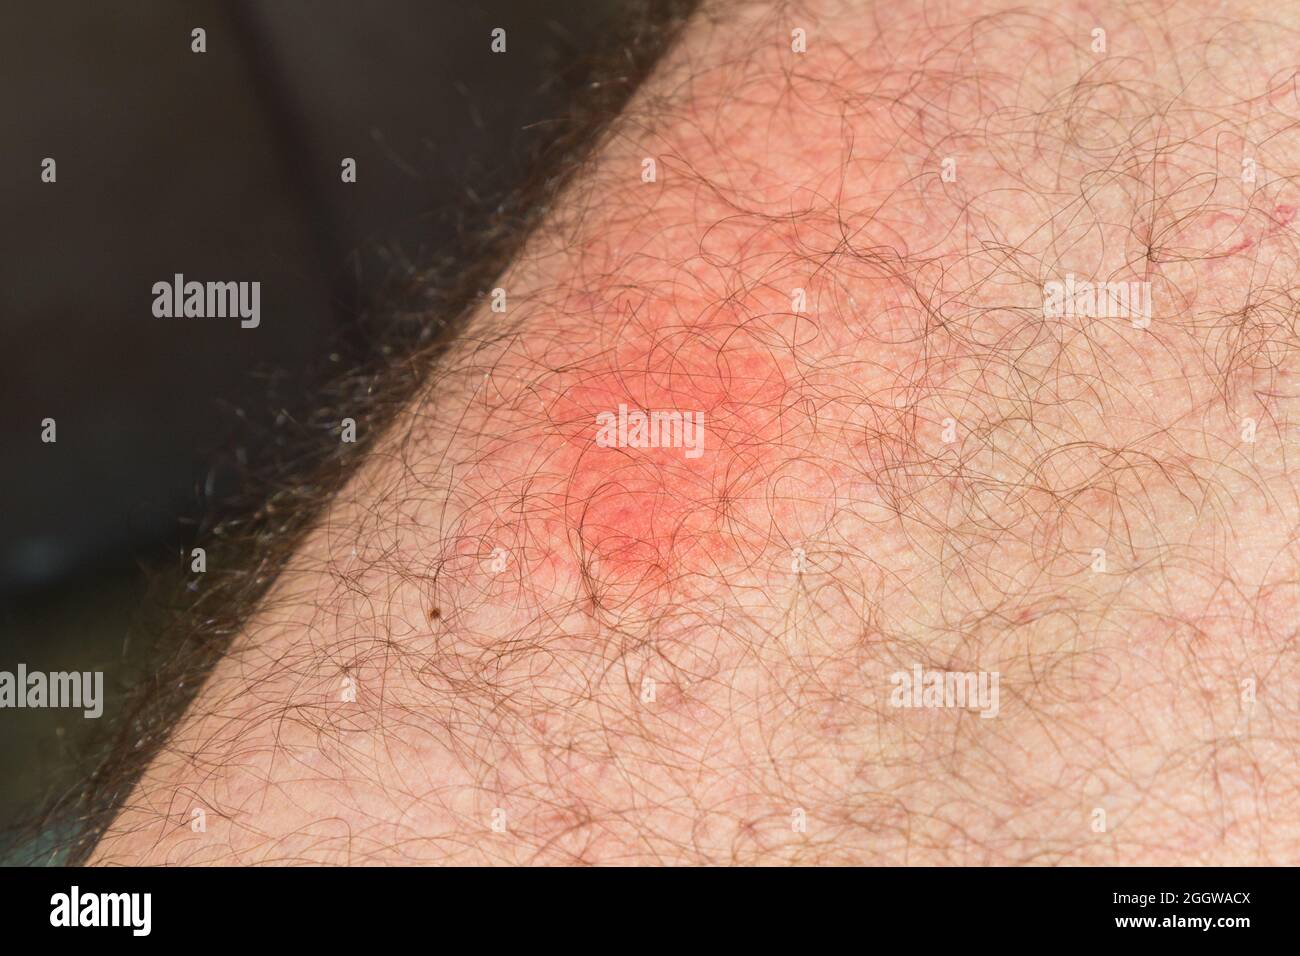 Wespe sticht nach einem Tag auf die Haut, rote Entzündungsflecken durch Wespenstich Stockfoto